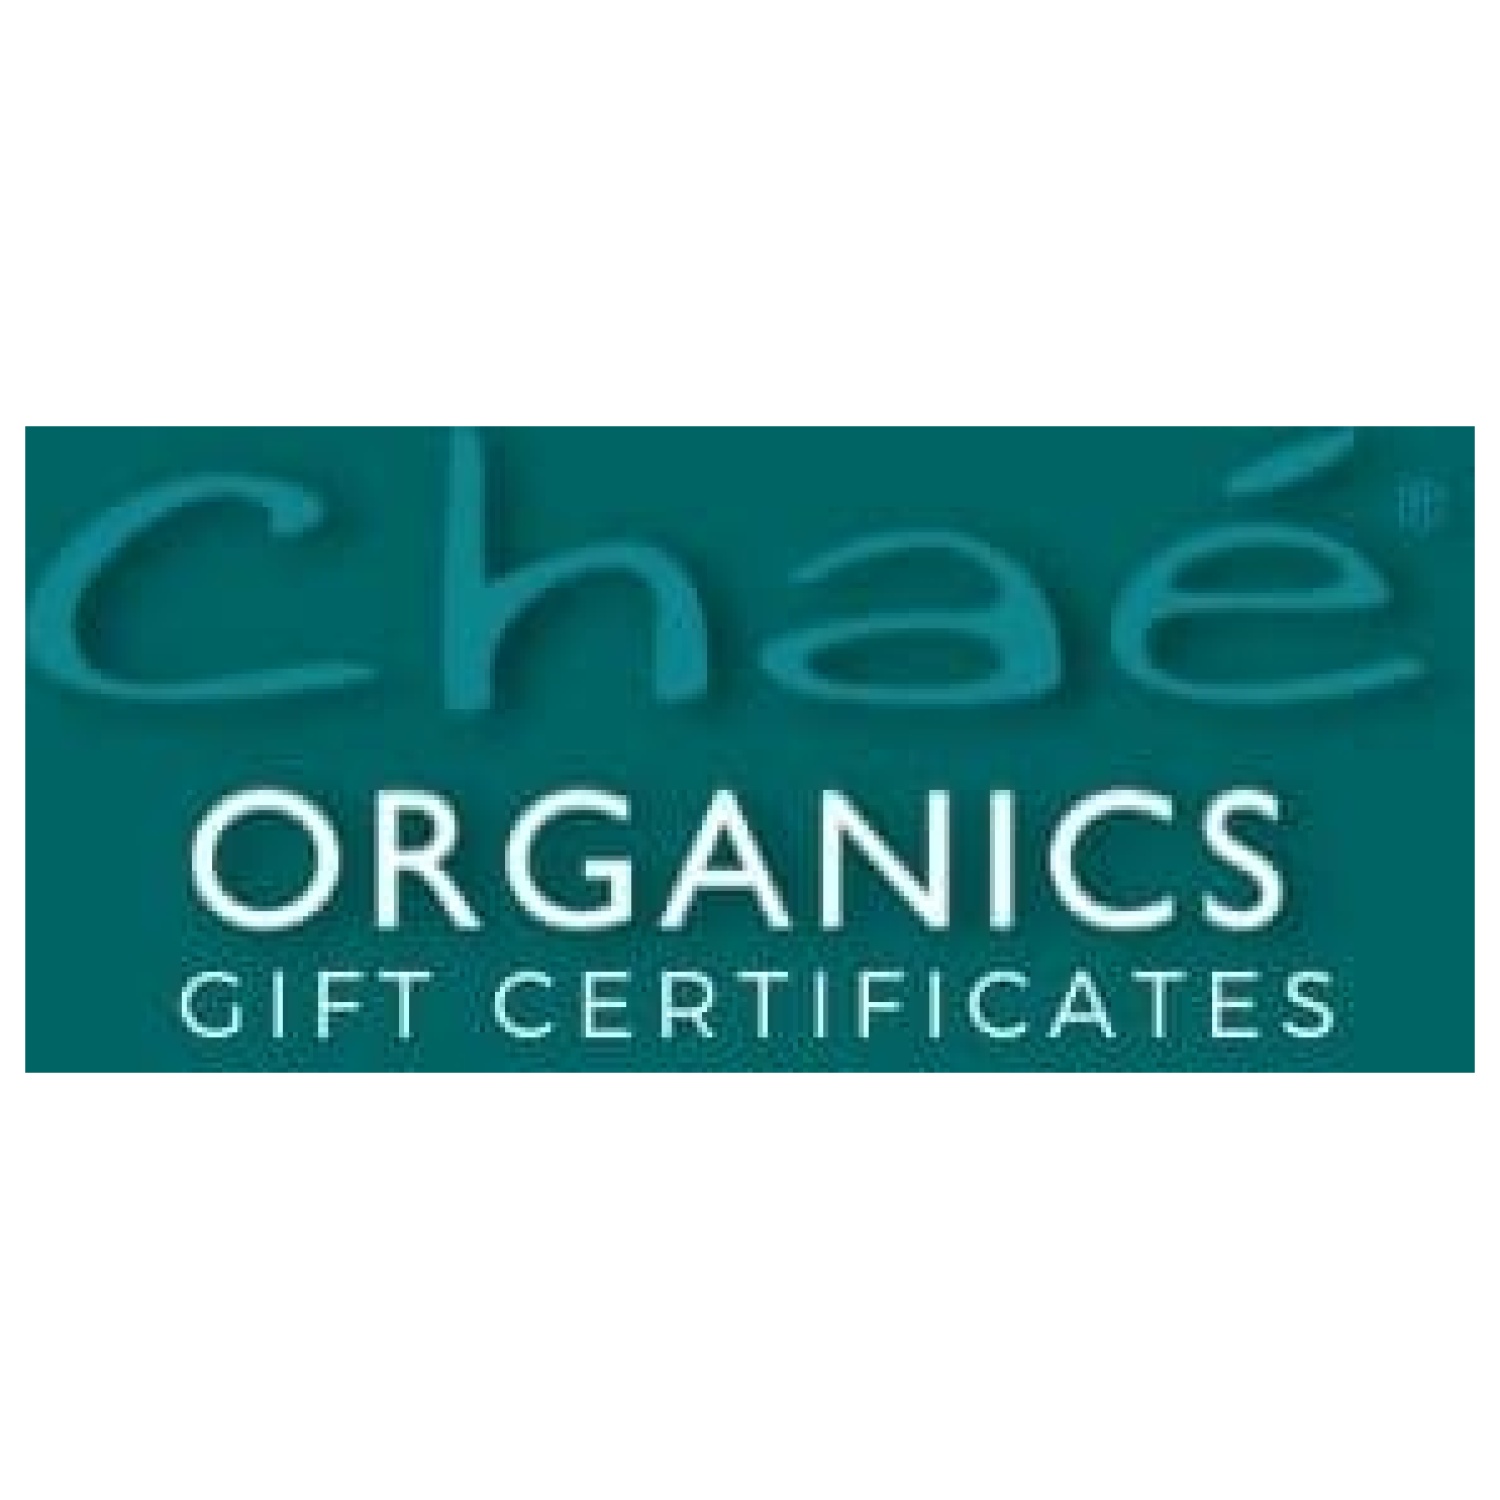 Chae Organics Gift Card